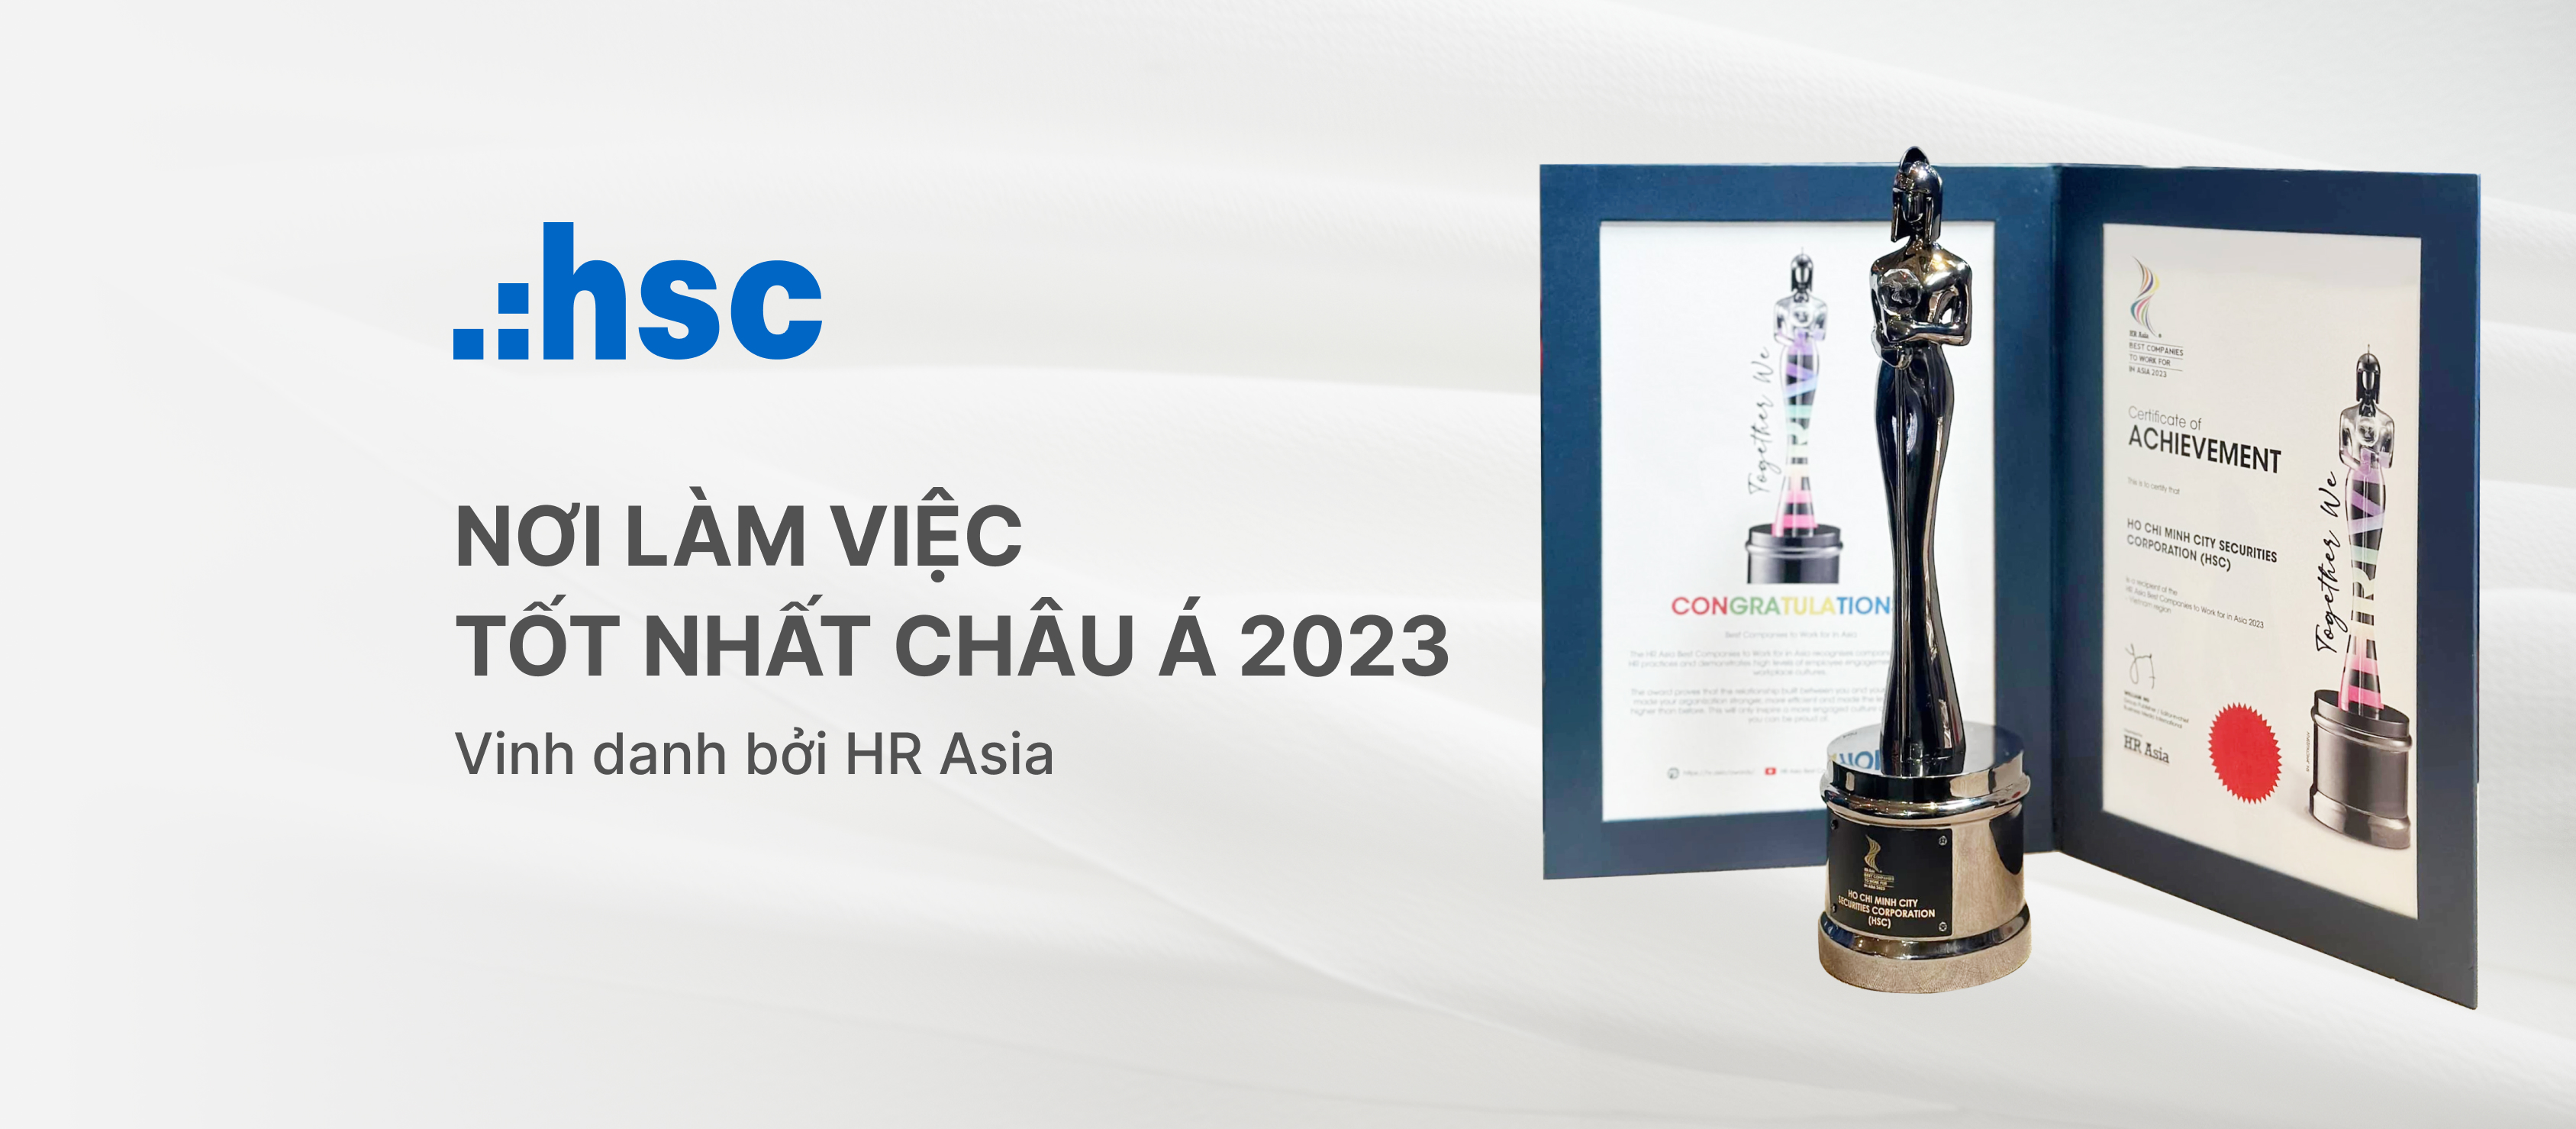 HSC - “Nơi làm việc tốt nhất châu Á 2023” – Vinh danh bởi HR Asia